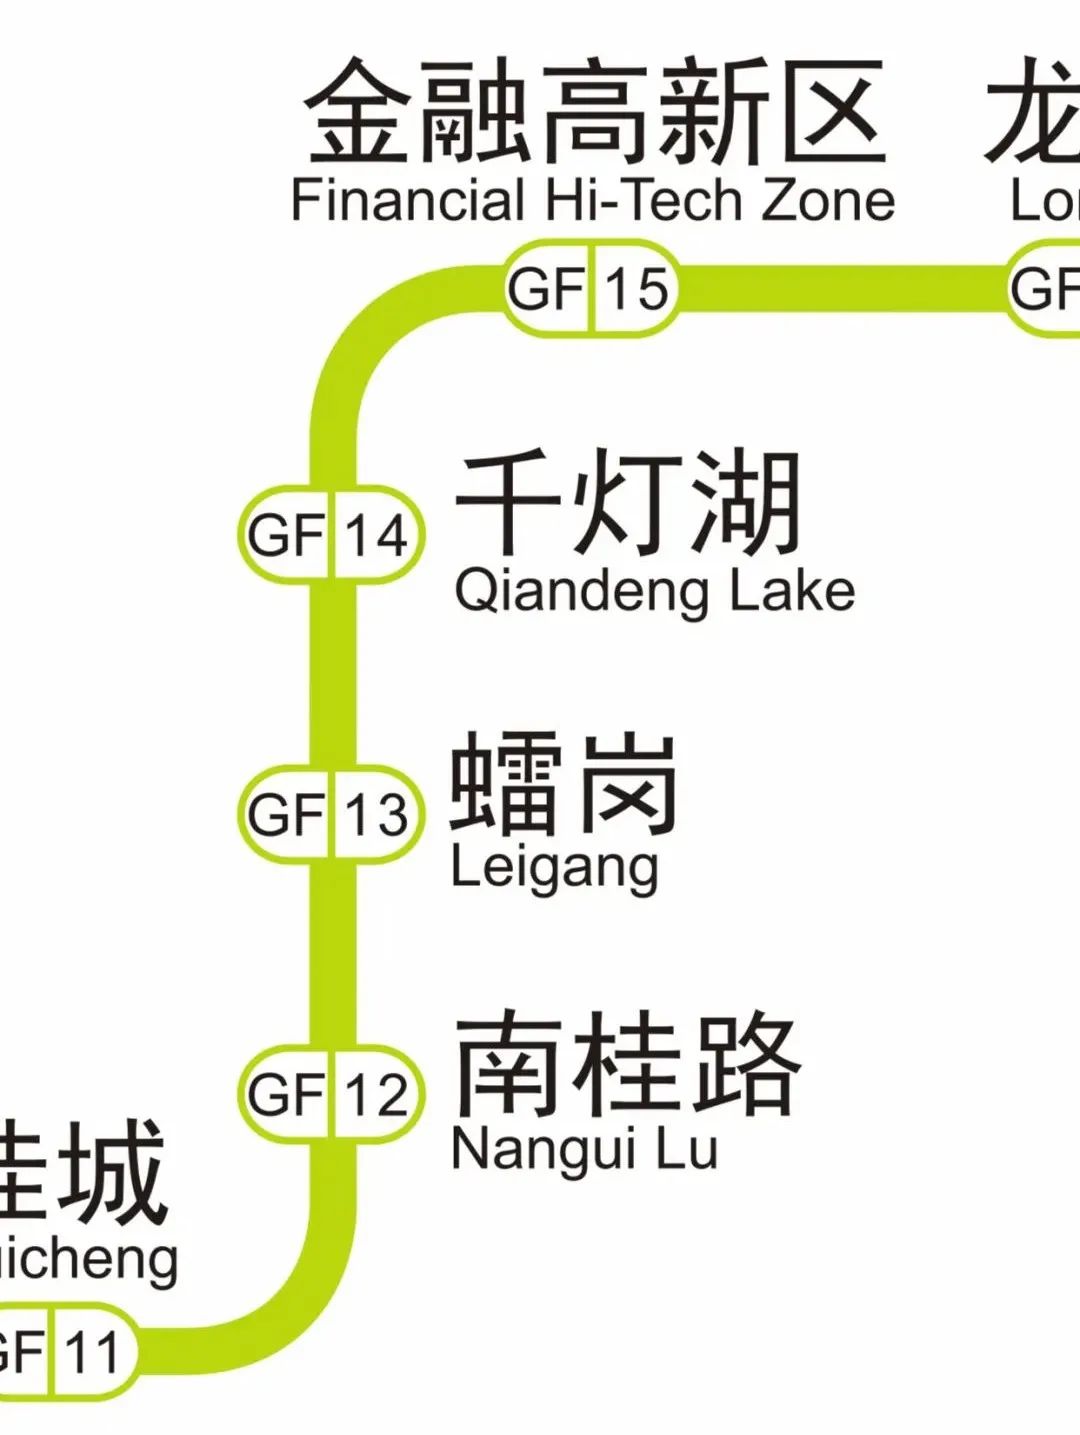 广佛地铁线网图上新7号线西延顺德段站名正式公布